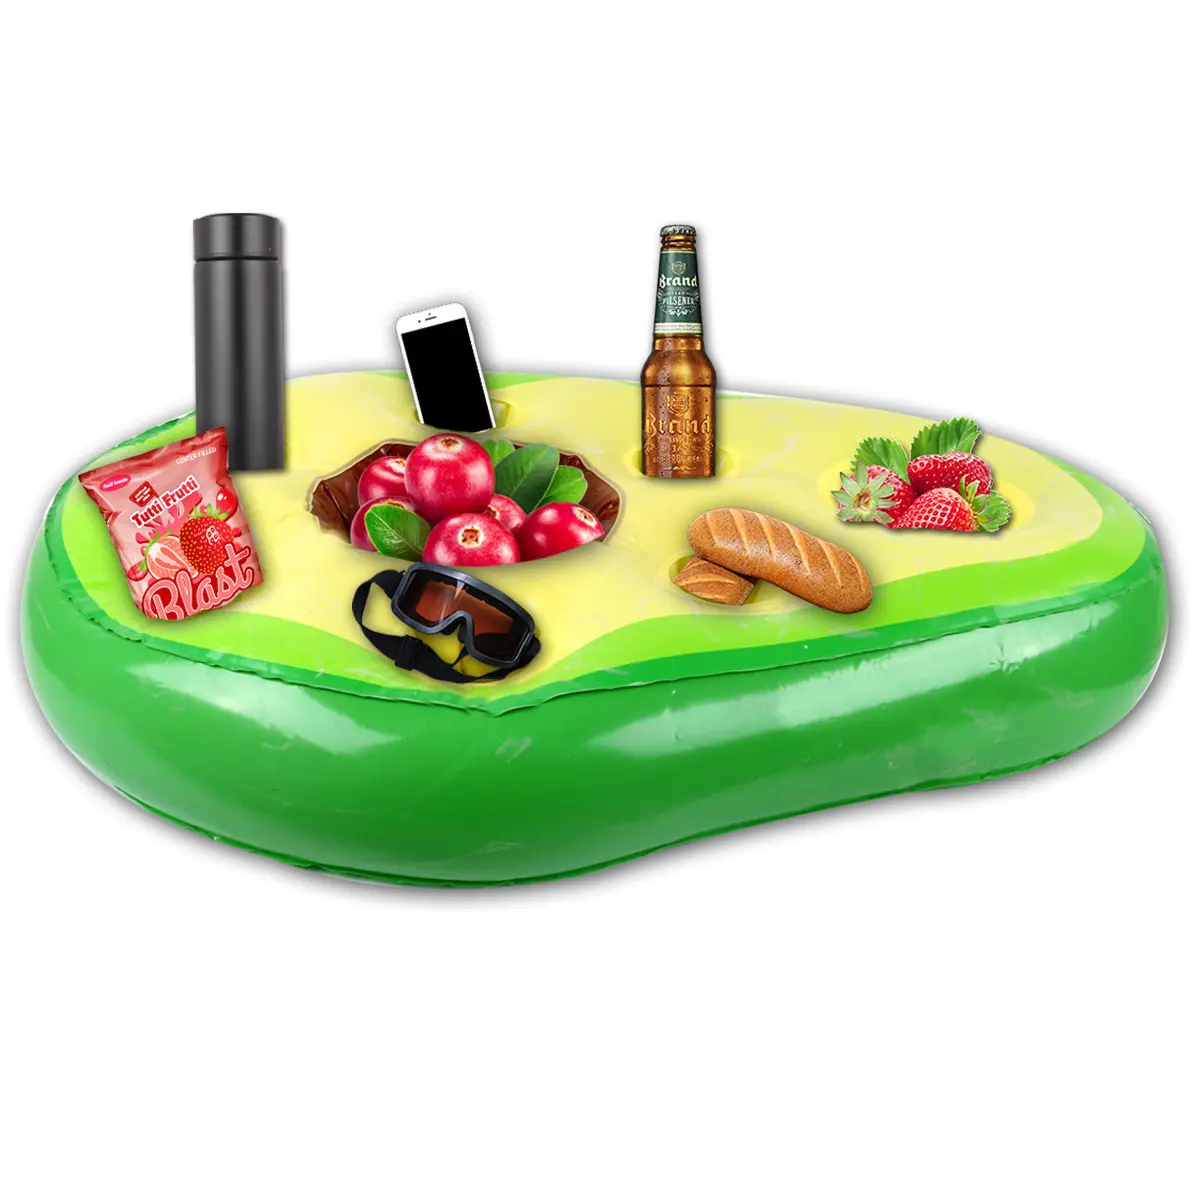 Novo partido self-service portátil pvc inflável abacate gelo bar piscina flutuante bebida titular coaster bandeja refrigerador